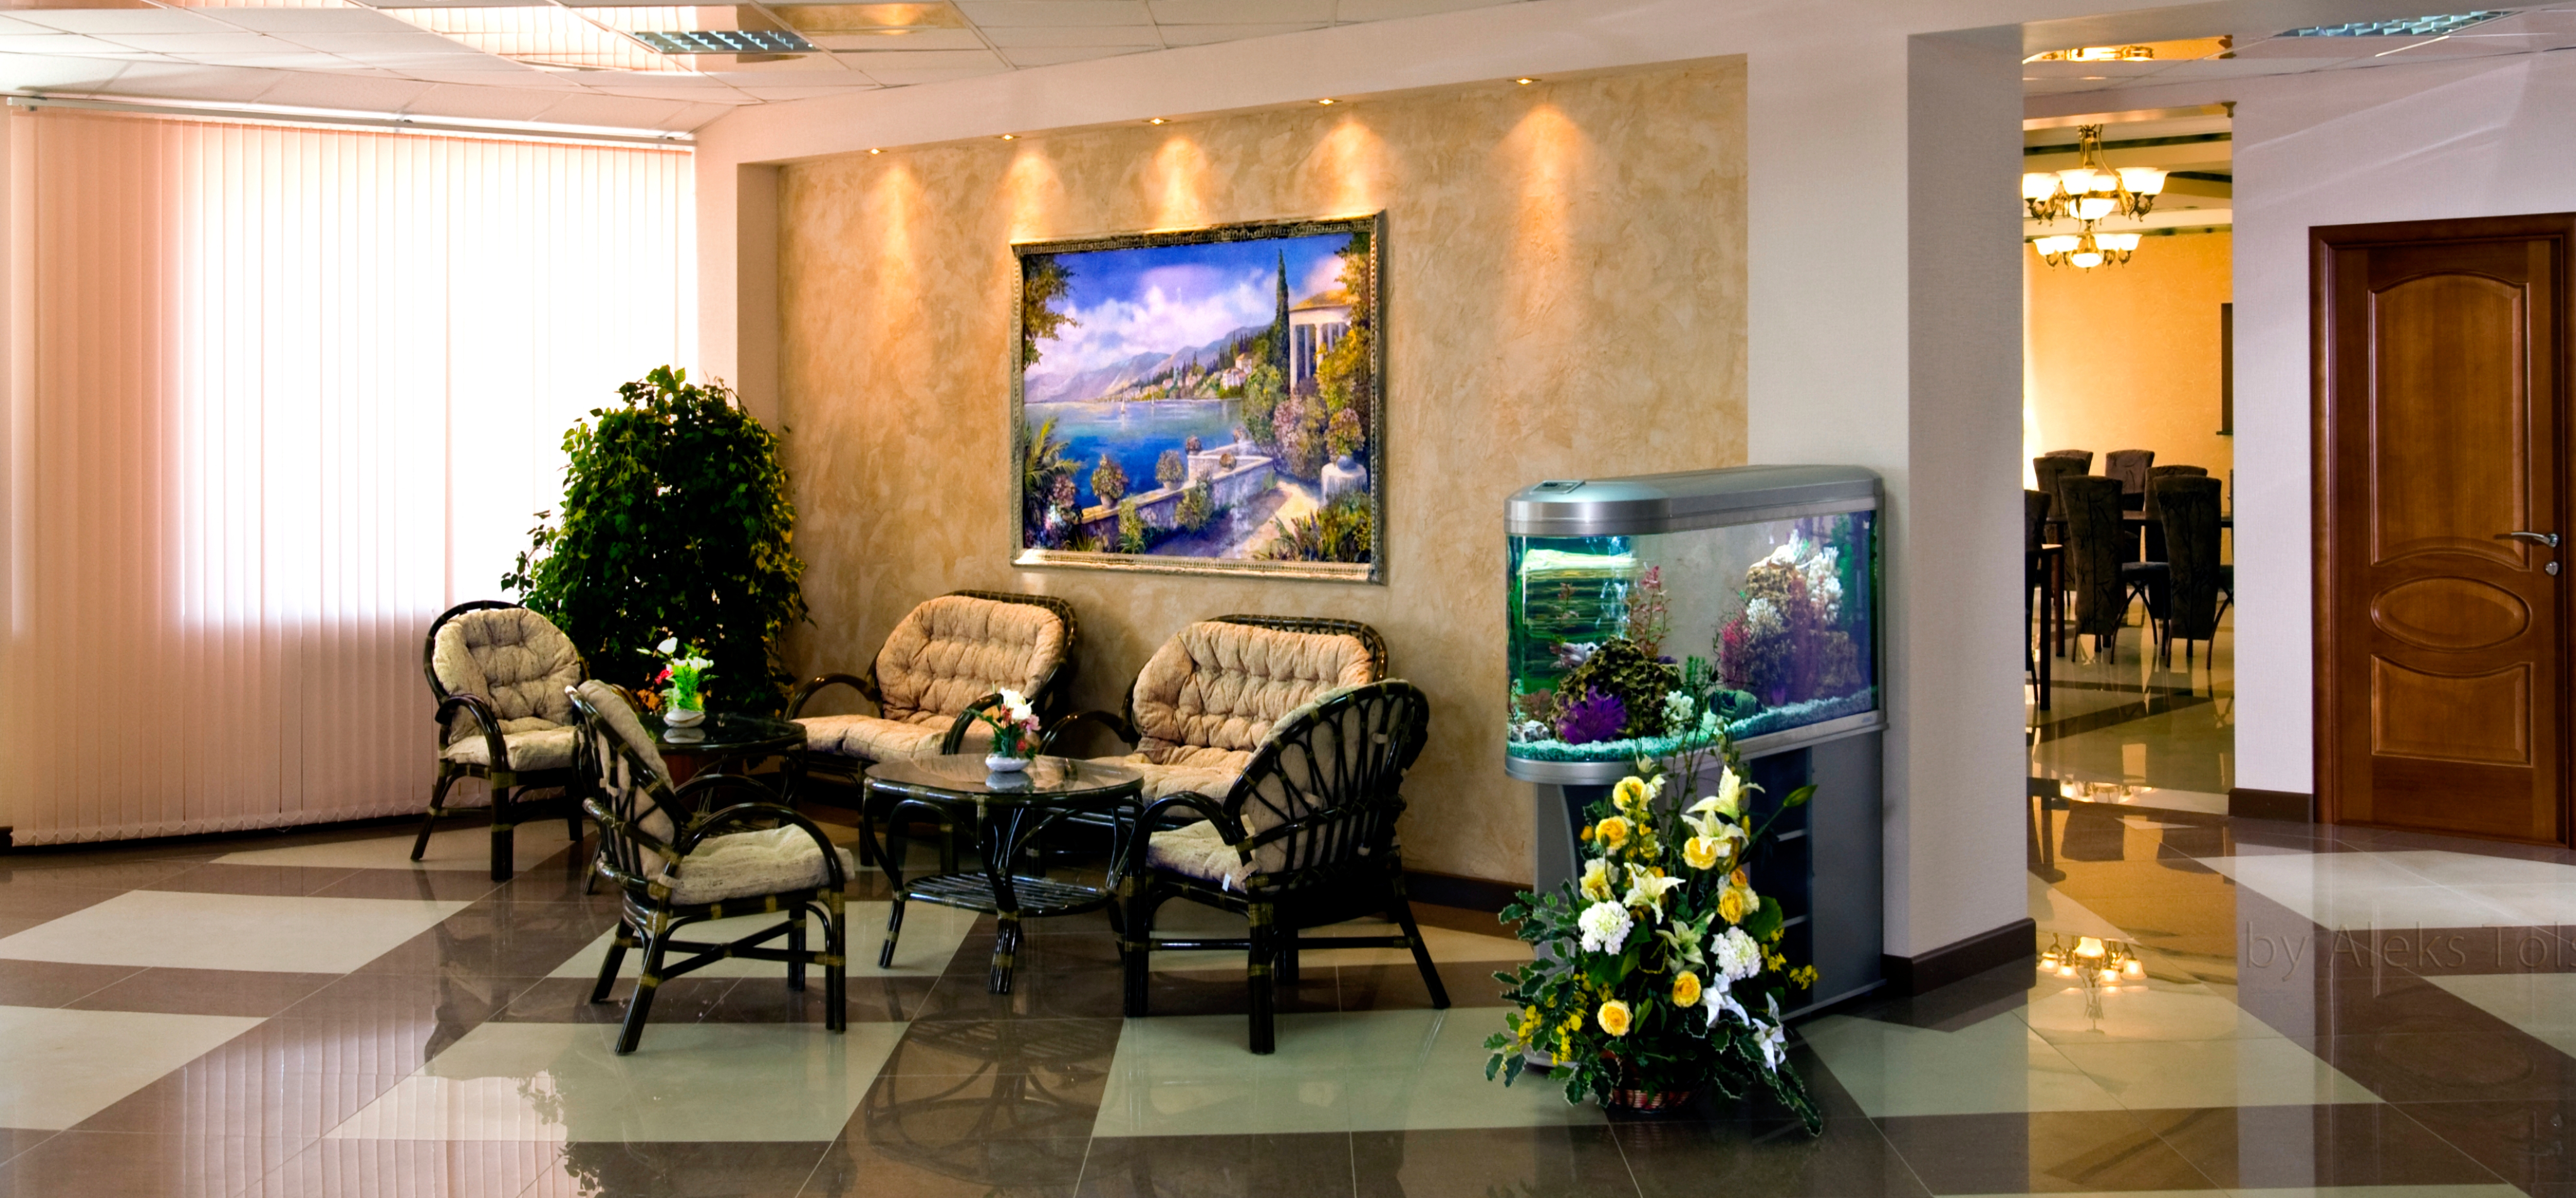 Гостиница Аврора, холл у стойки регистрации, зона отдыха с мягкими диванами, большим аквариумом, быстрым wi-fi